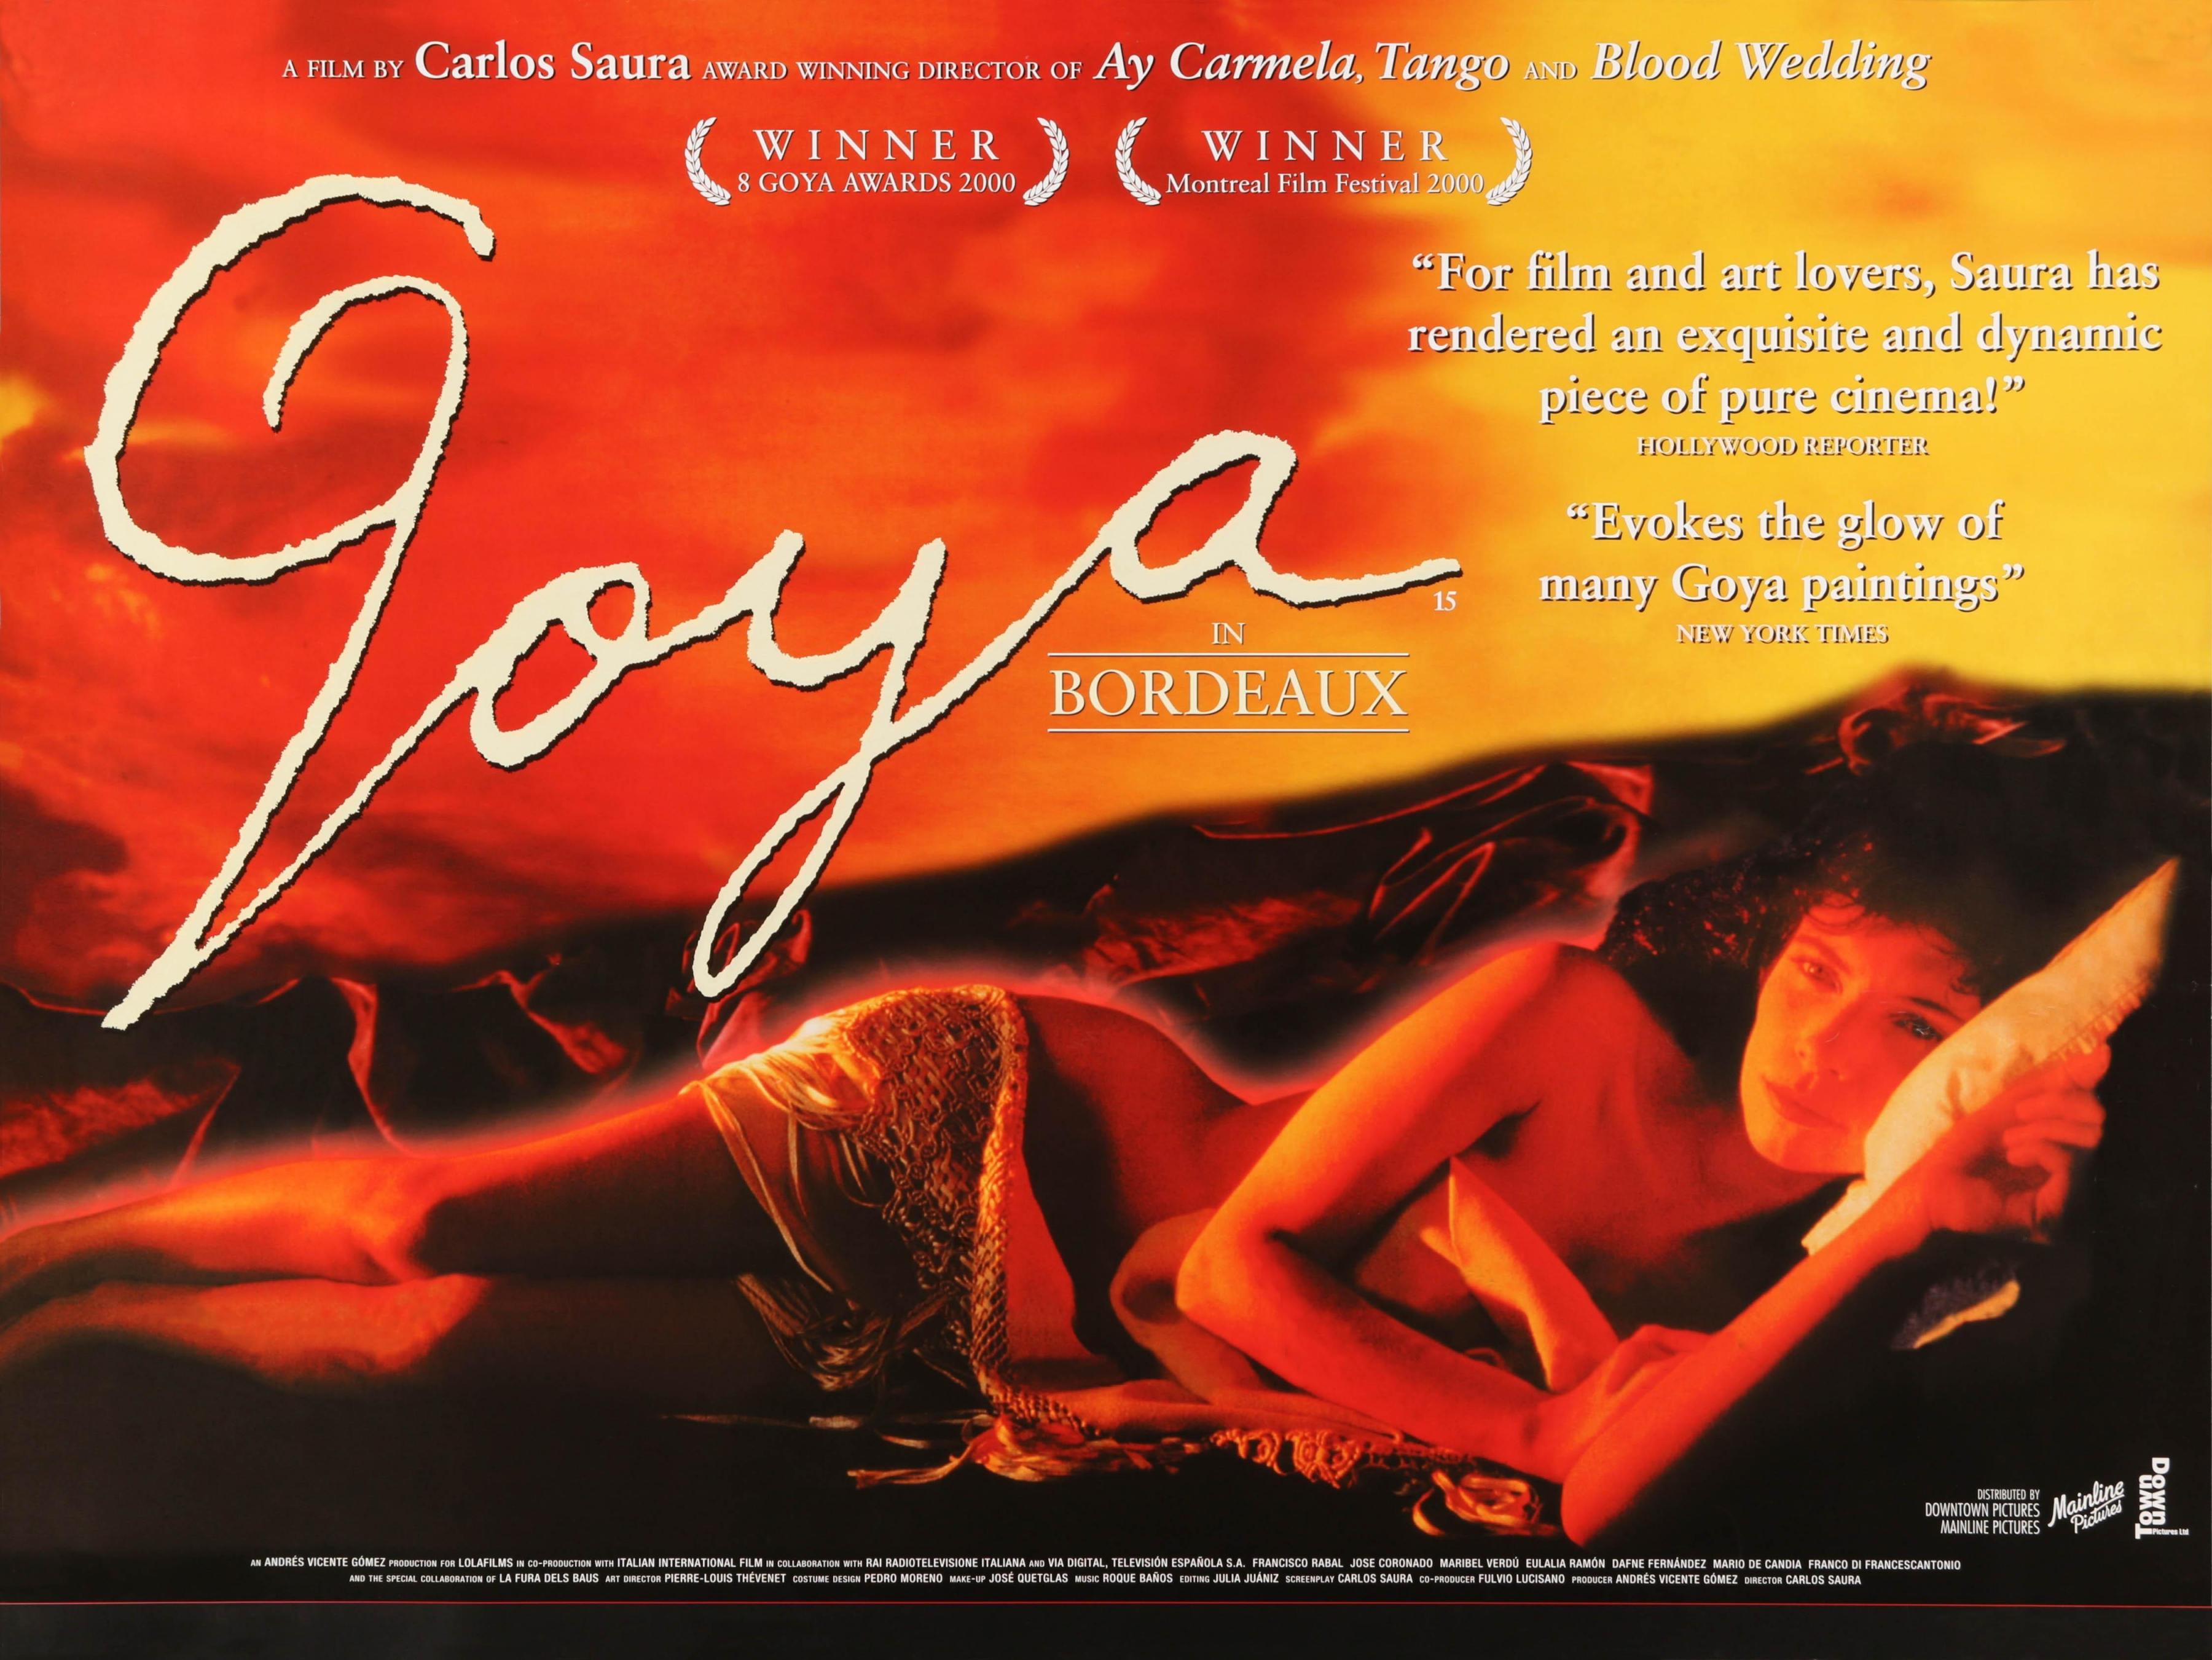 Постер фильма Гойя в Бордо | Goya en Burdeos